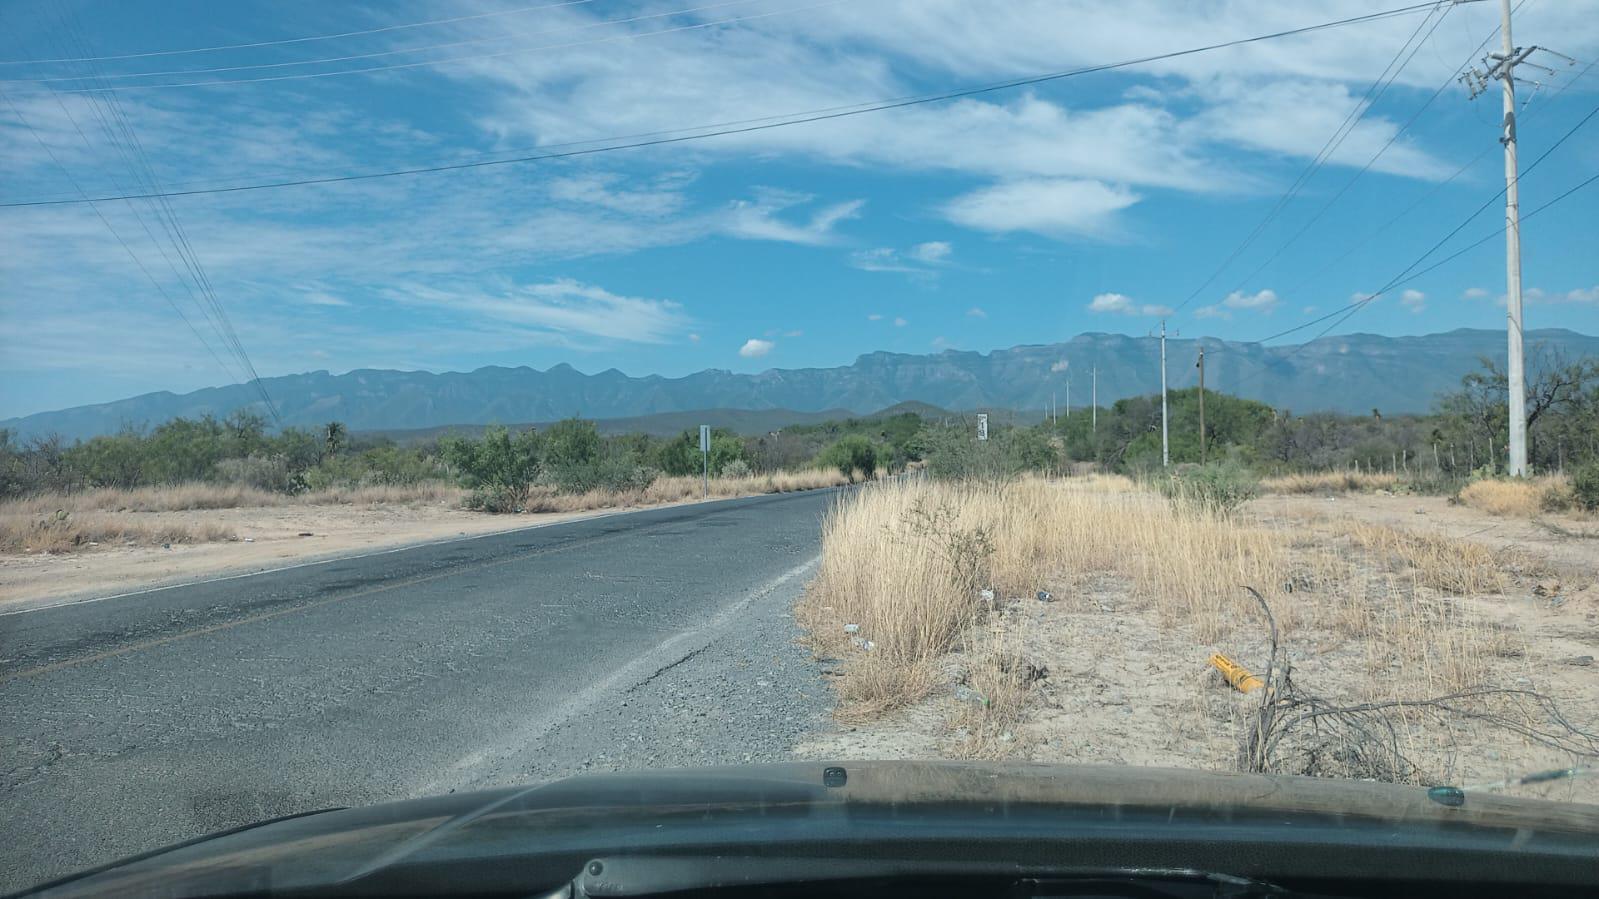 Terreno en venta de 1984 hectáreas uso ganadero y cinegético Villaldama Nuevo León